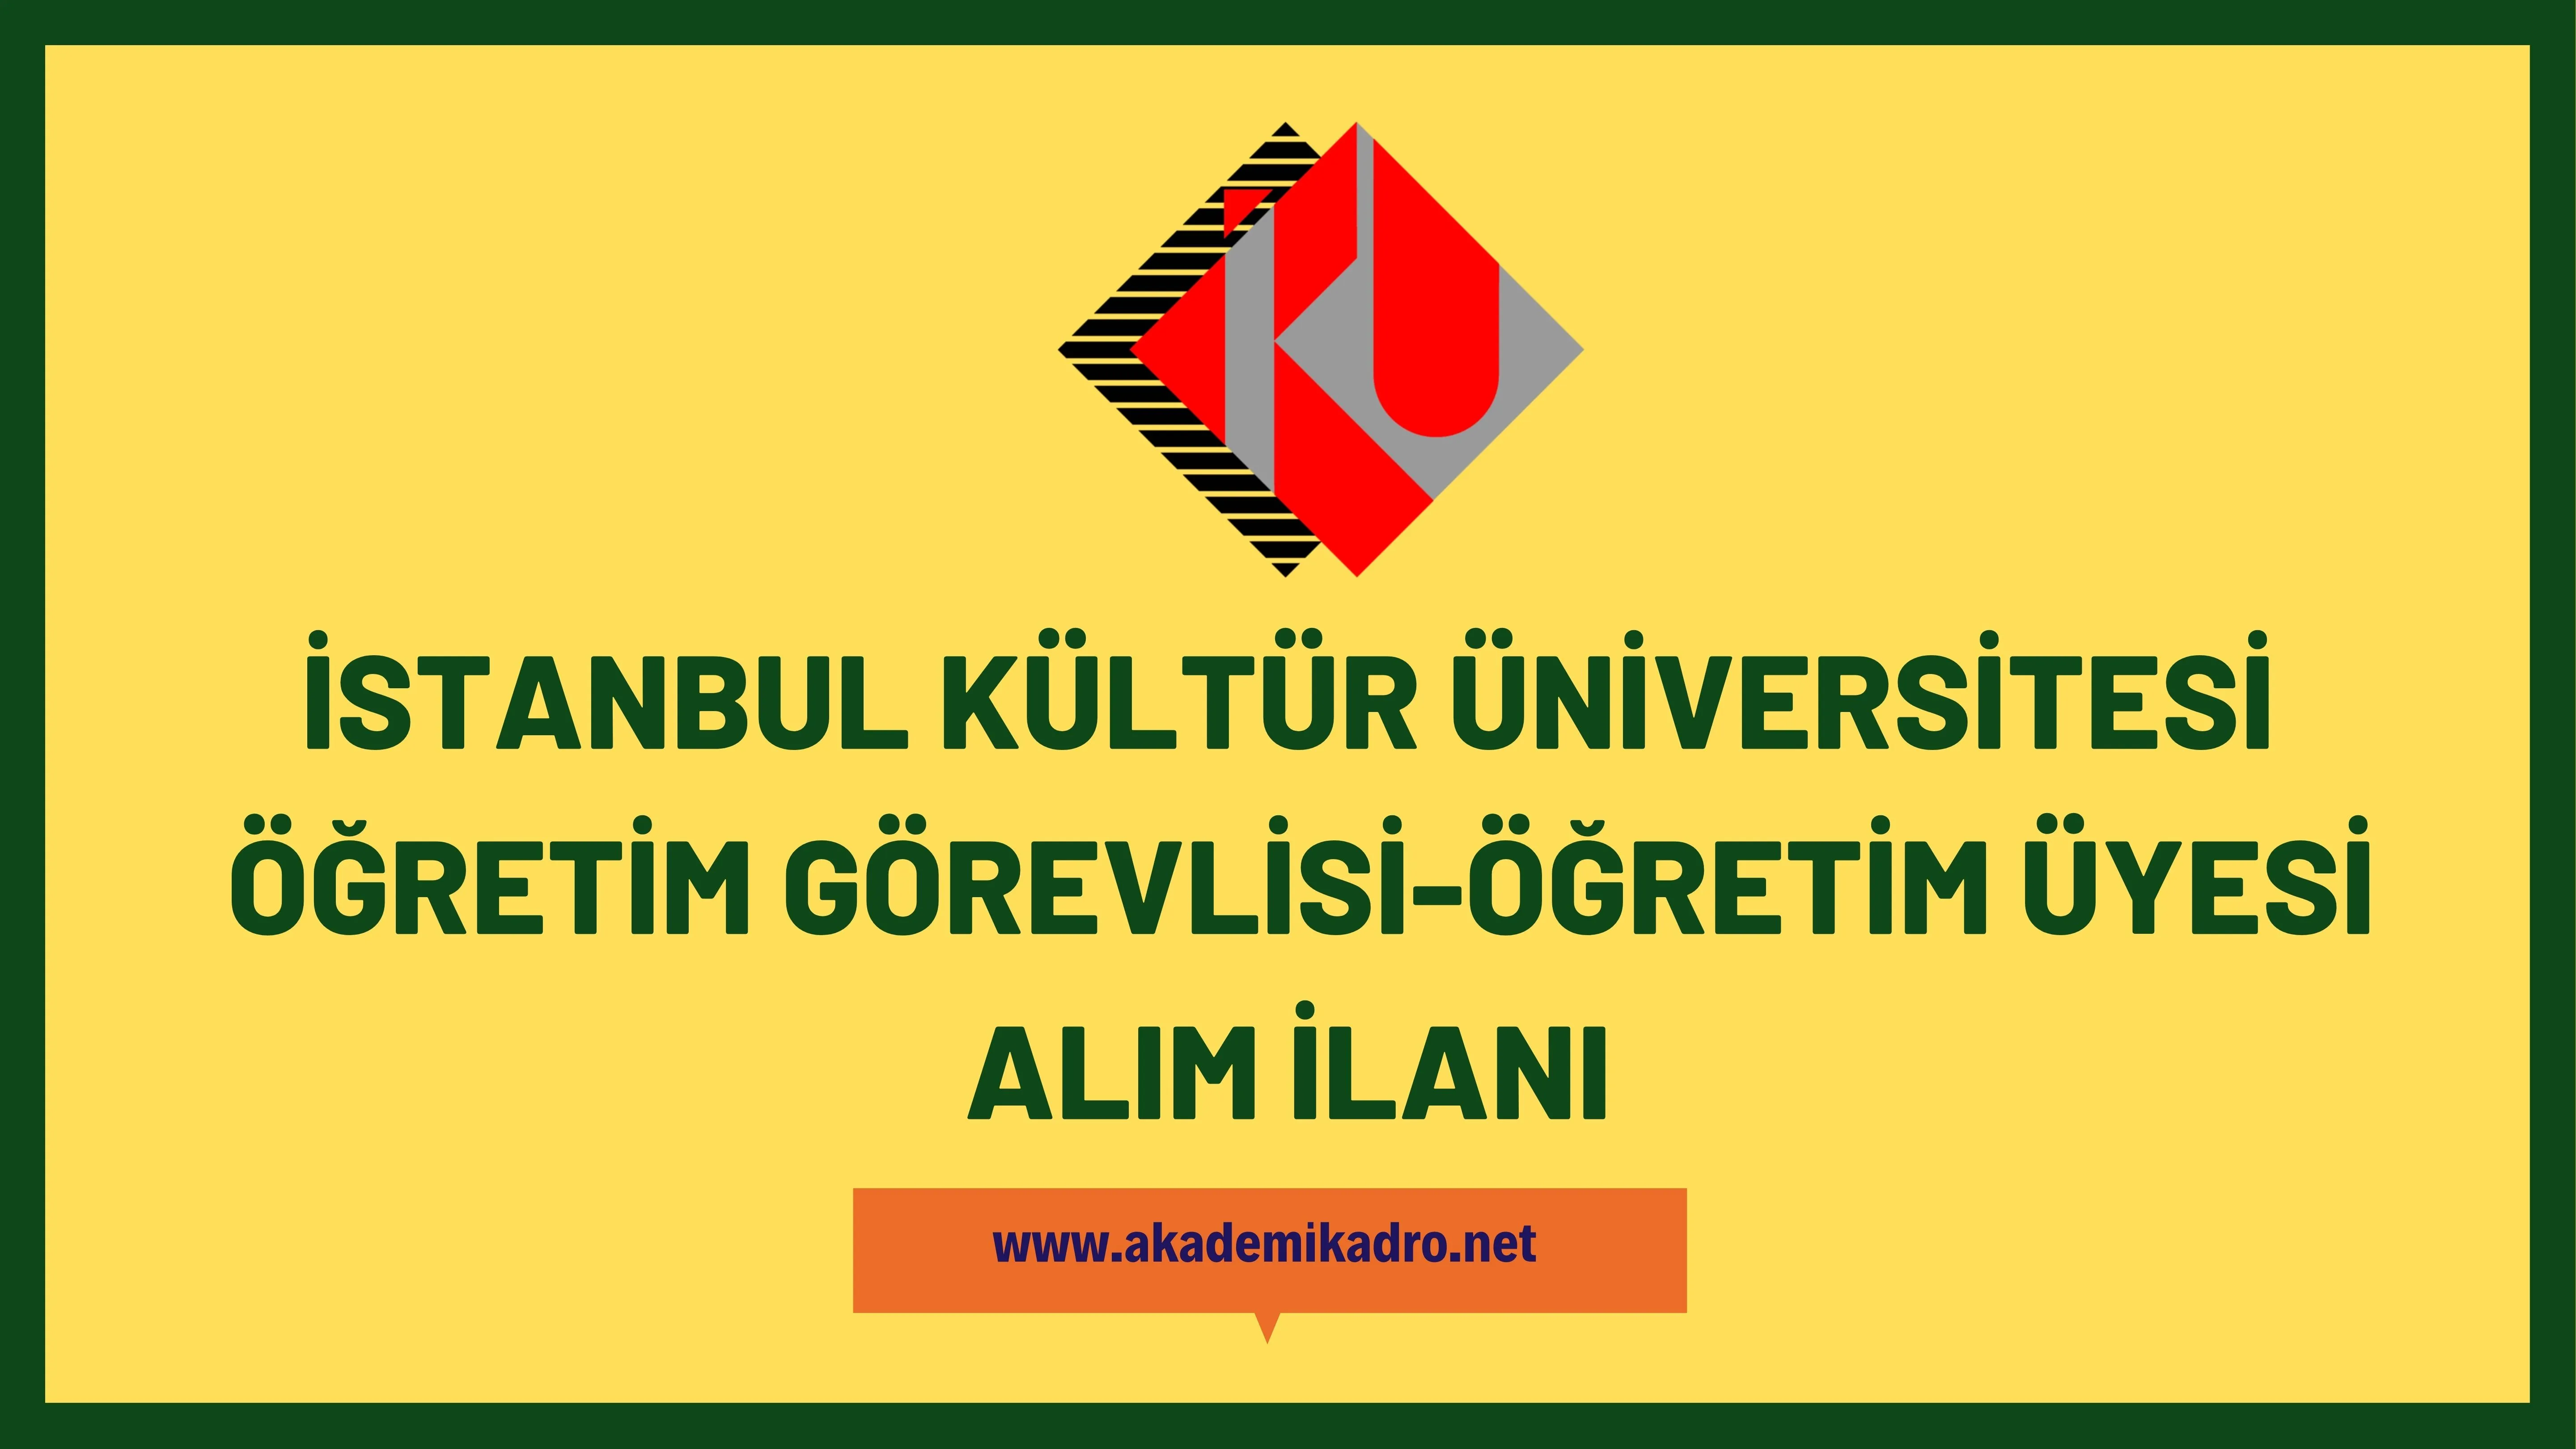 İstanbul Kültür Üniversitesi 5 Öğretim görevlisi ve 6 Öğretim üyesi alacak.